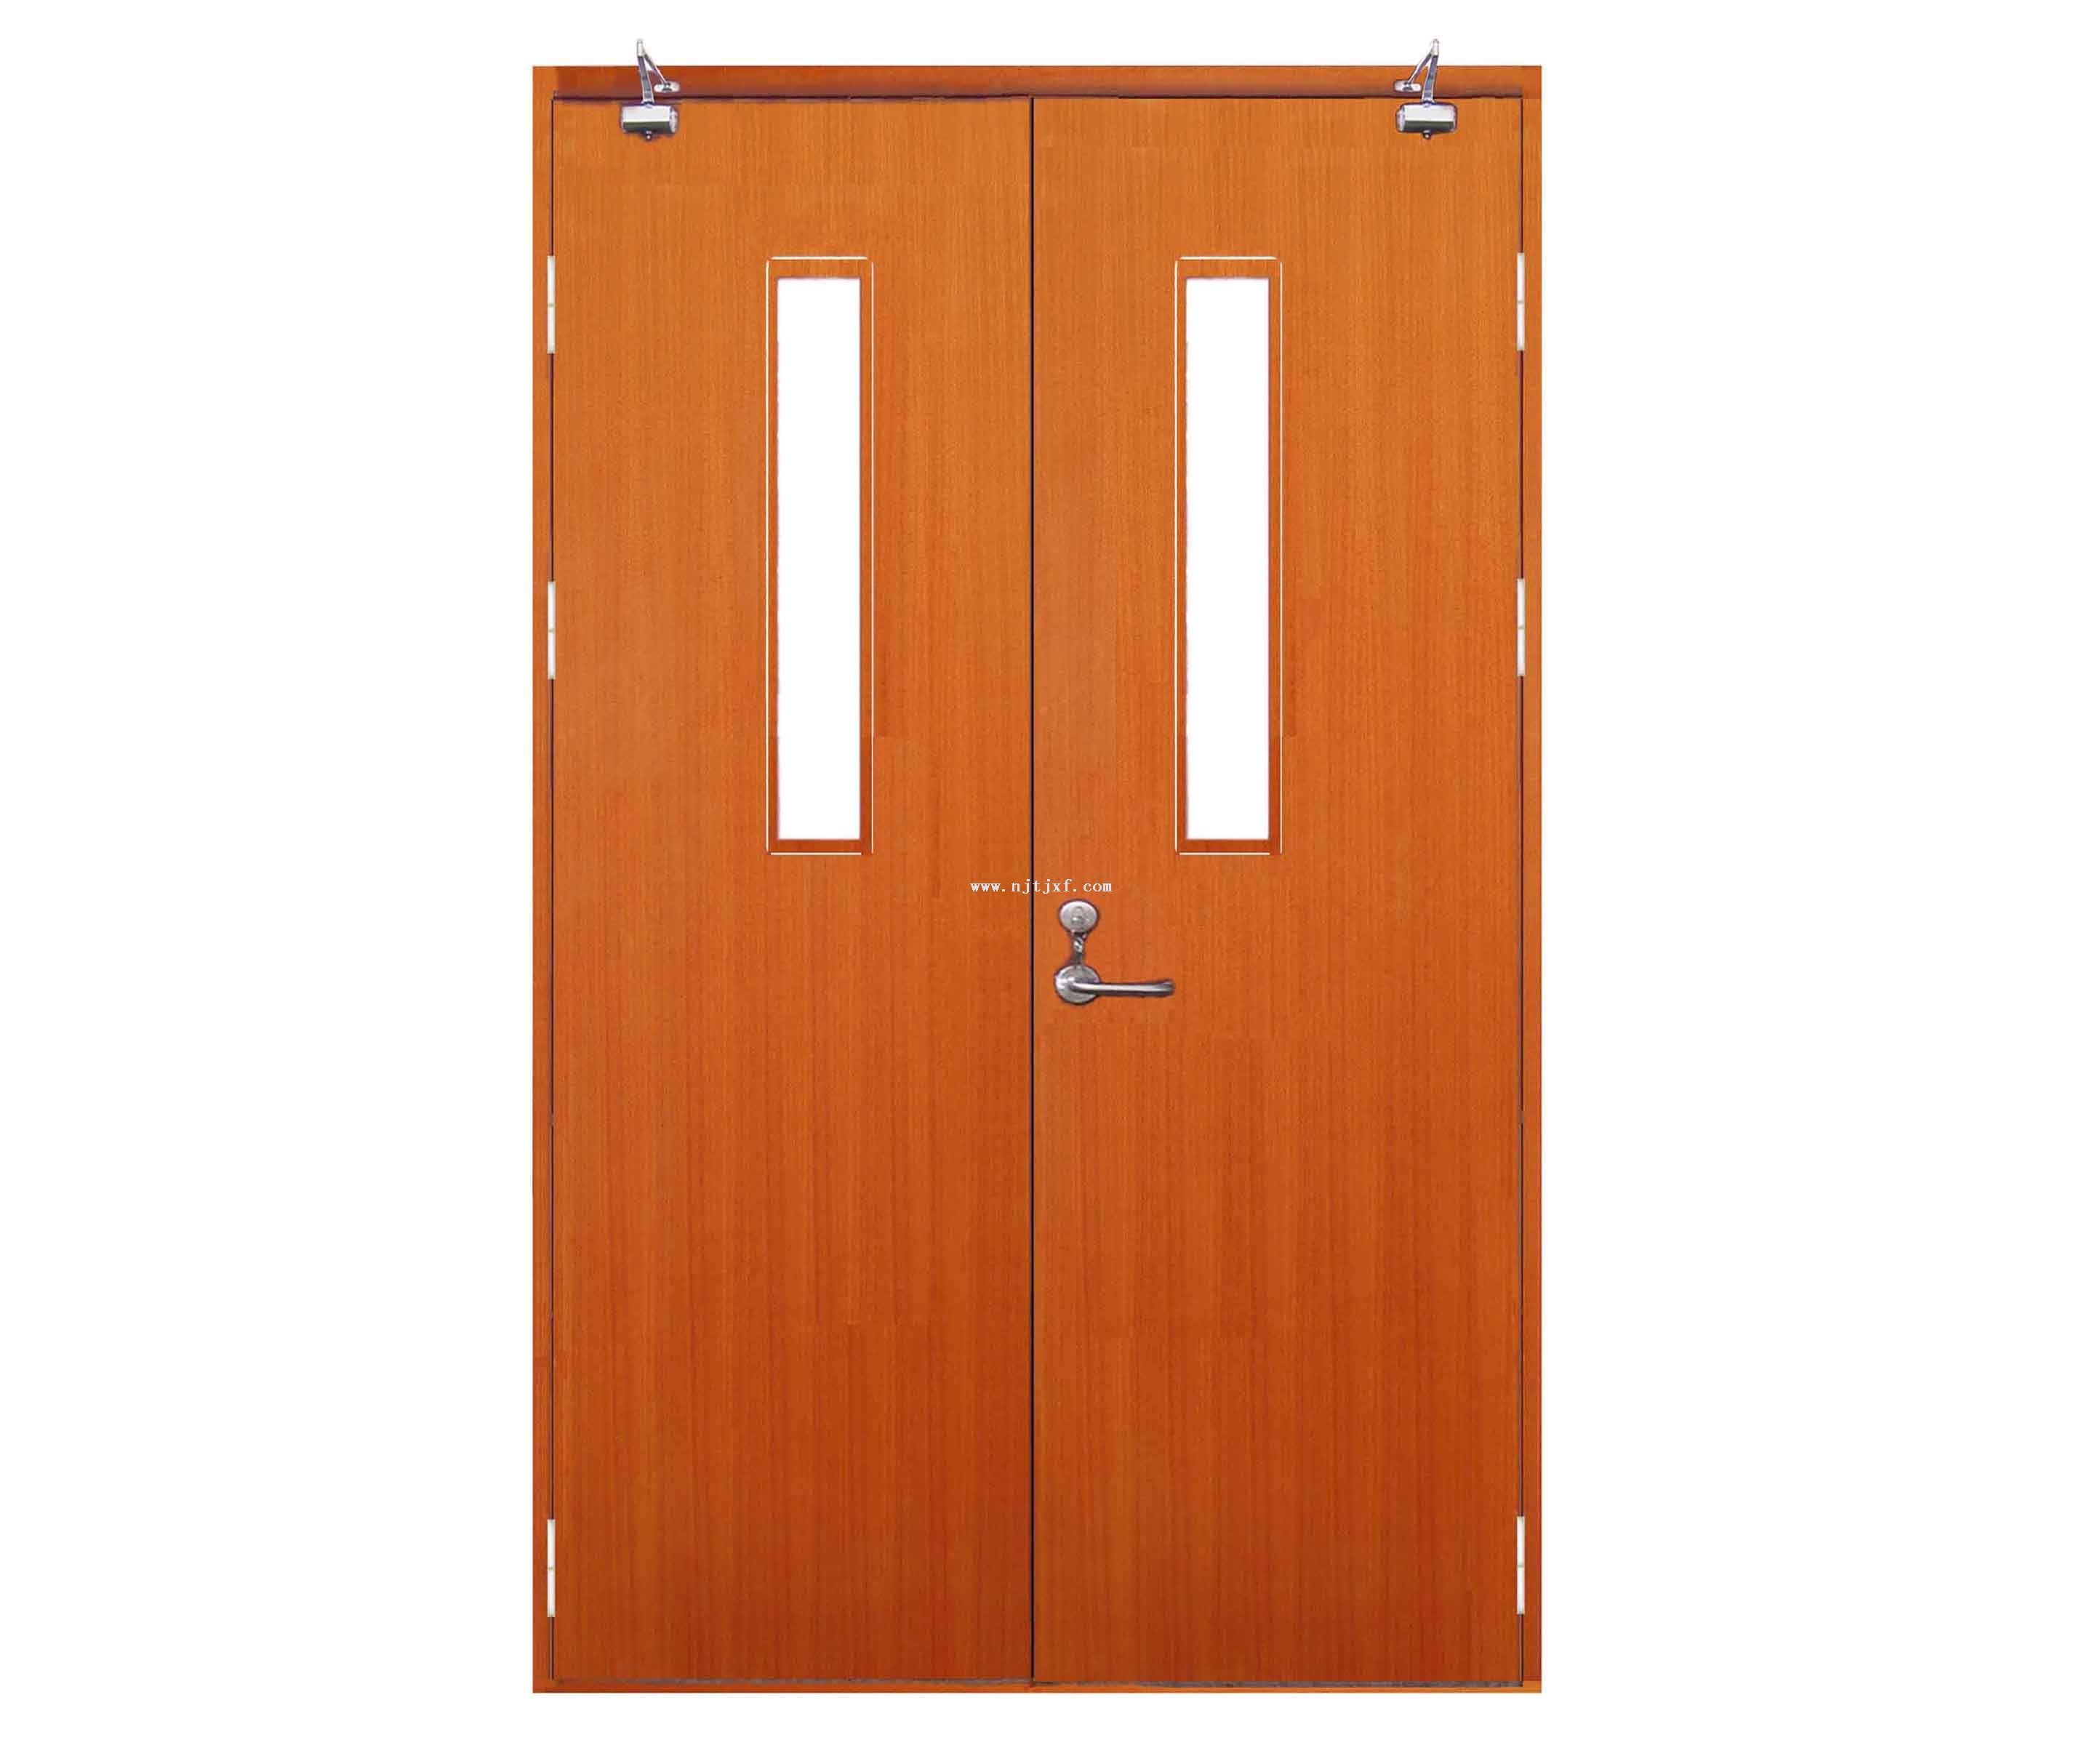 对于小空间或者小面积的厨卫，因为门洞结构或格局等问题，无法安装常规尺寸的门，PD门结合折叠门、平开门，让生活更灵活。